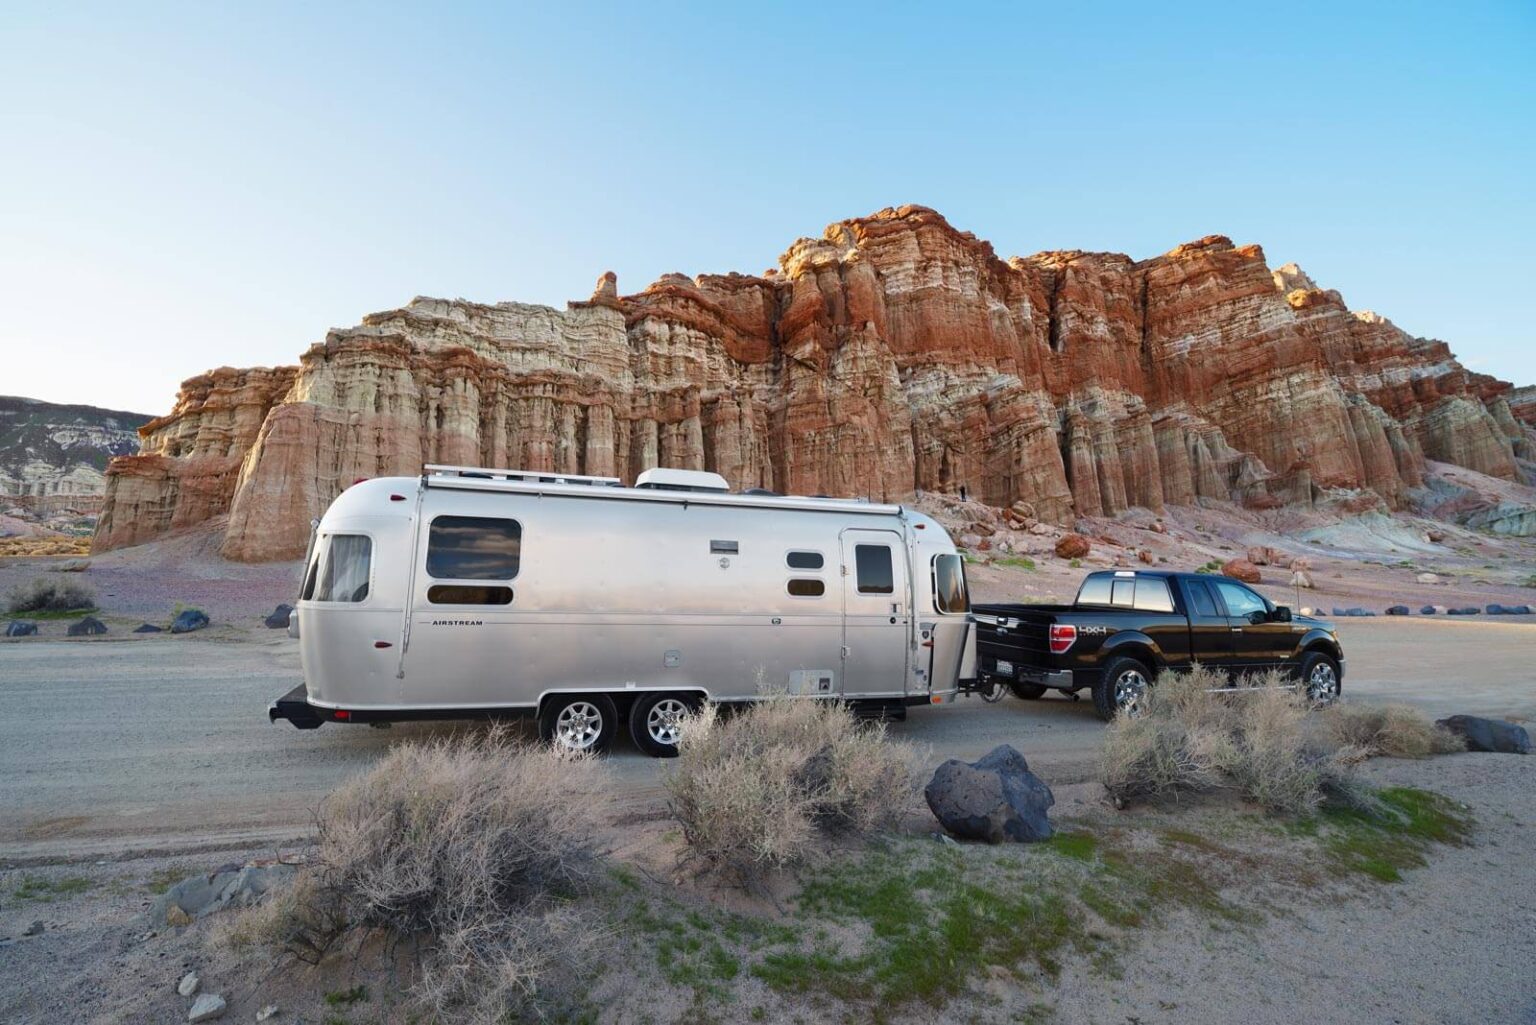 Travel trailer parked in front of desert rocks.